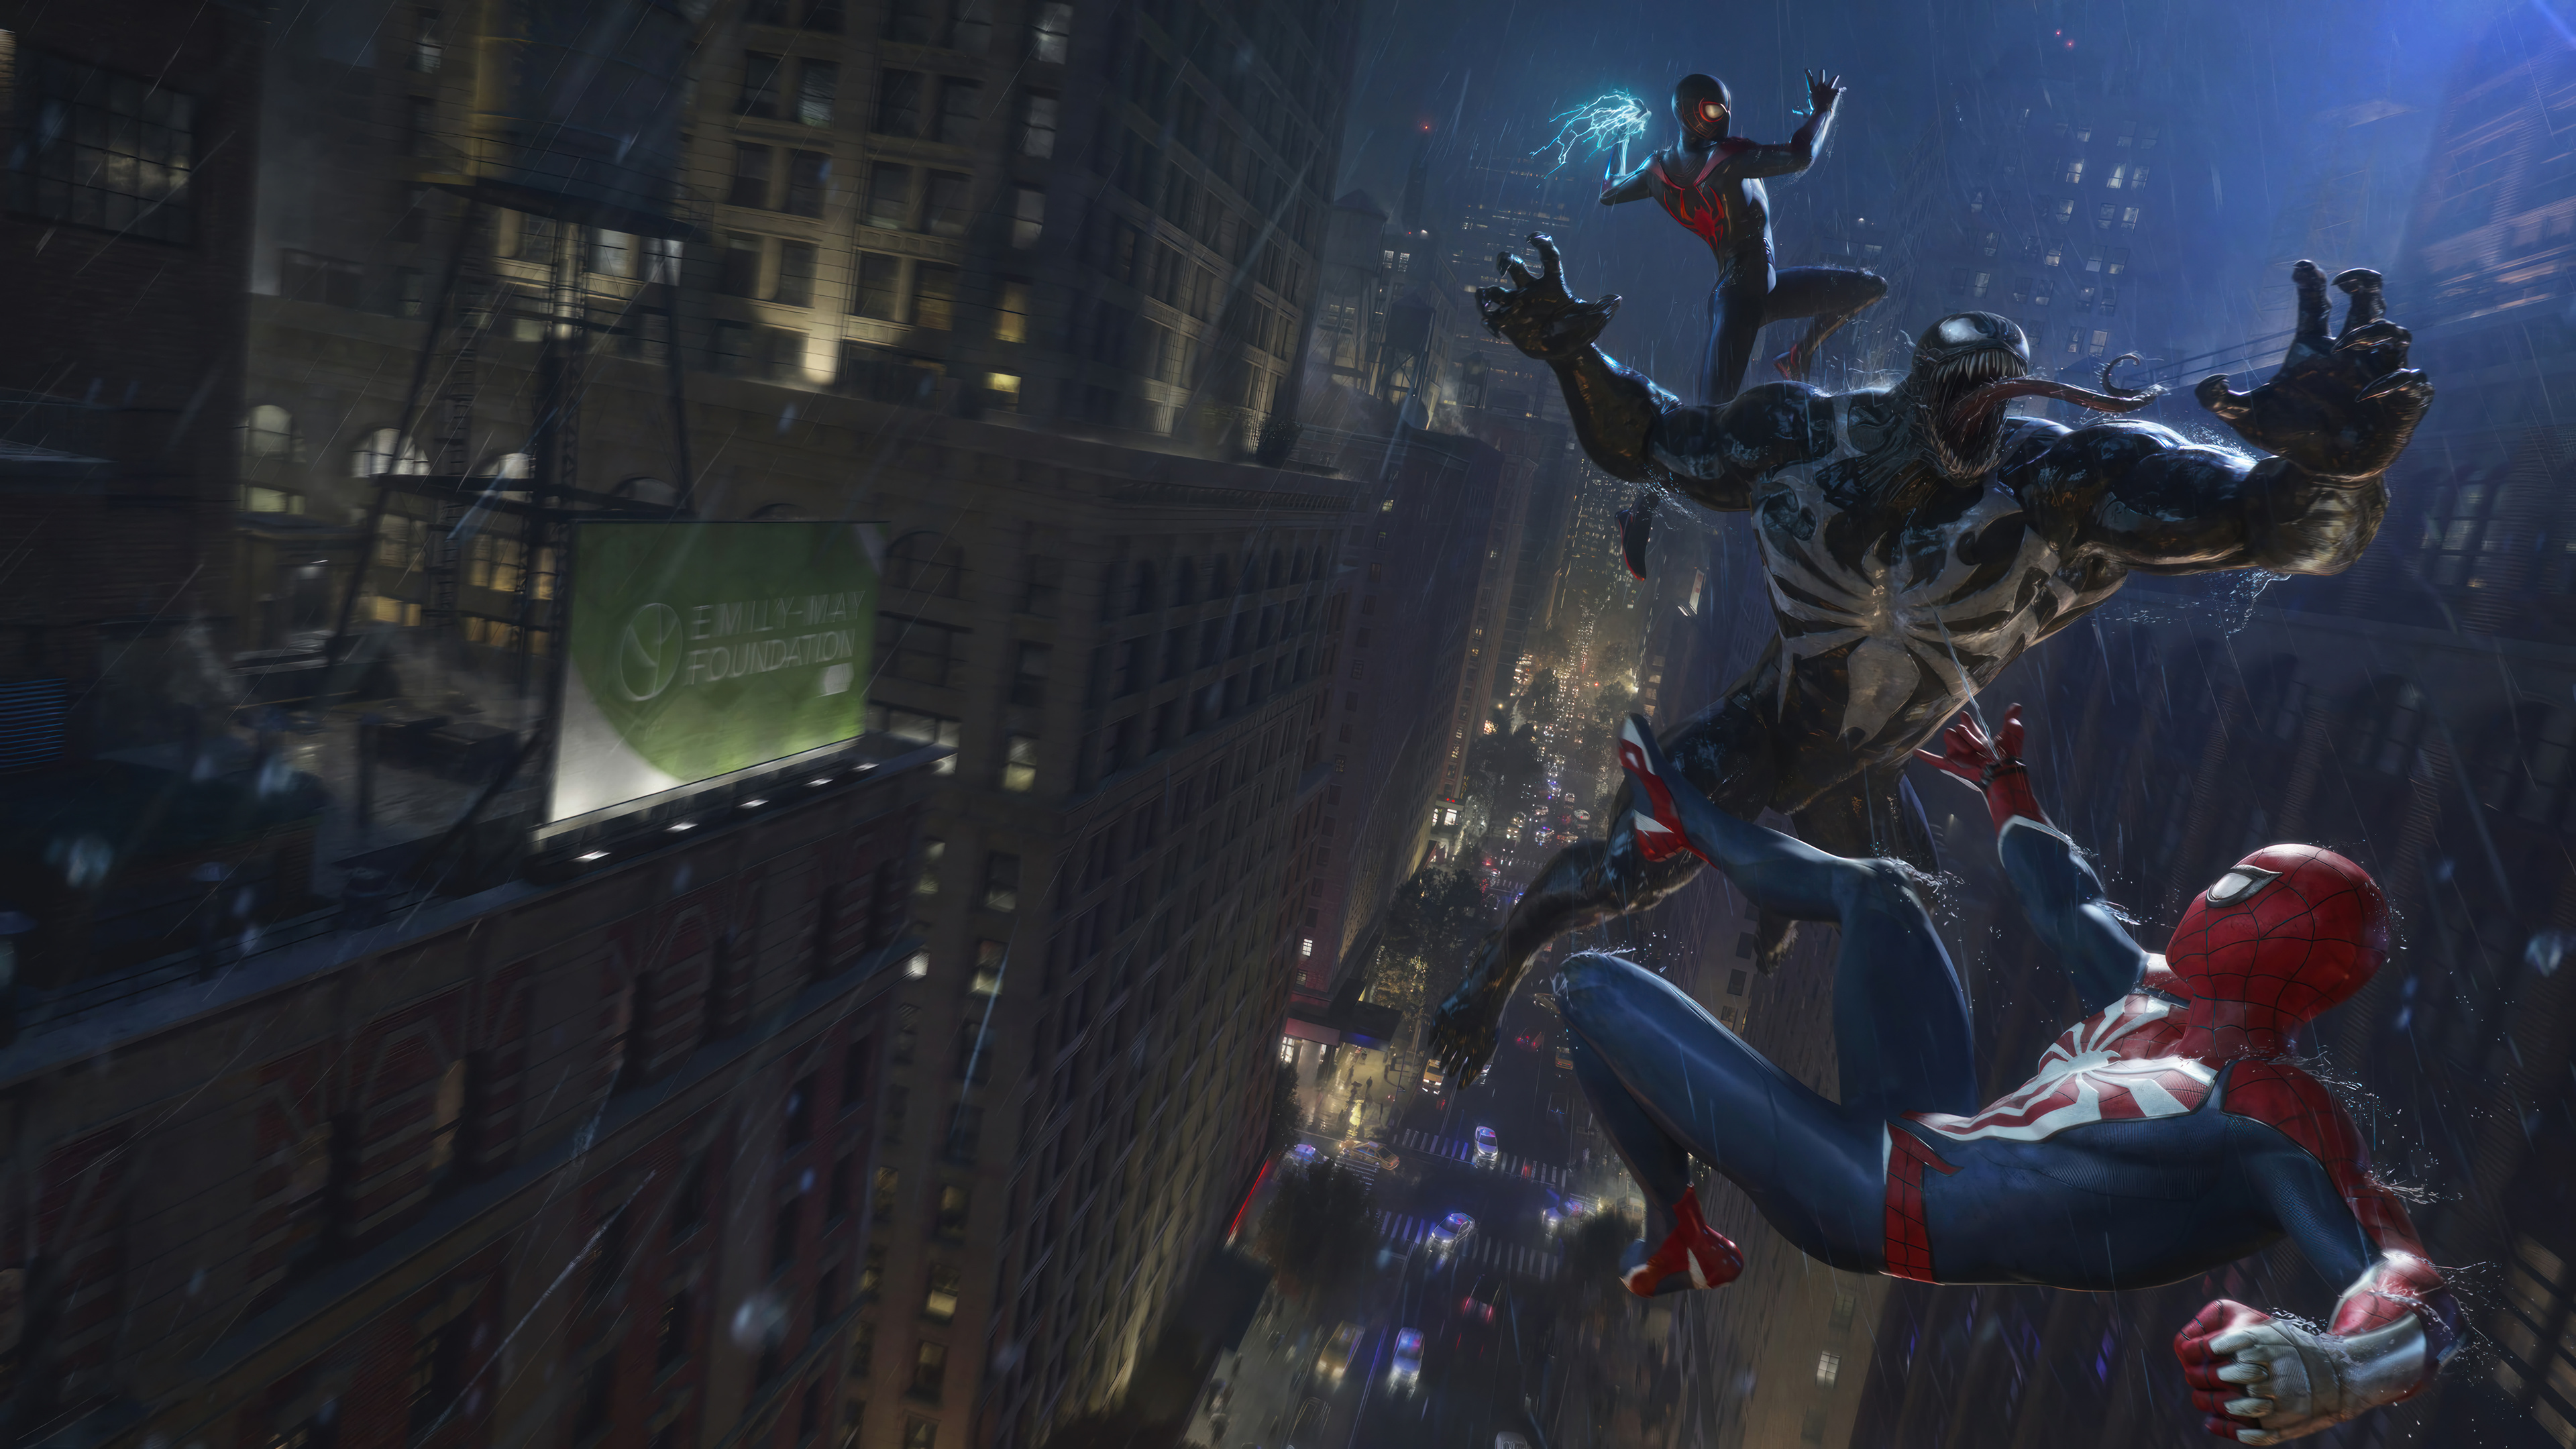 Постер для записи в блоге - Обзор Marvel’s Spider-Man 2 | Прежде чем играть